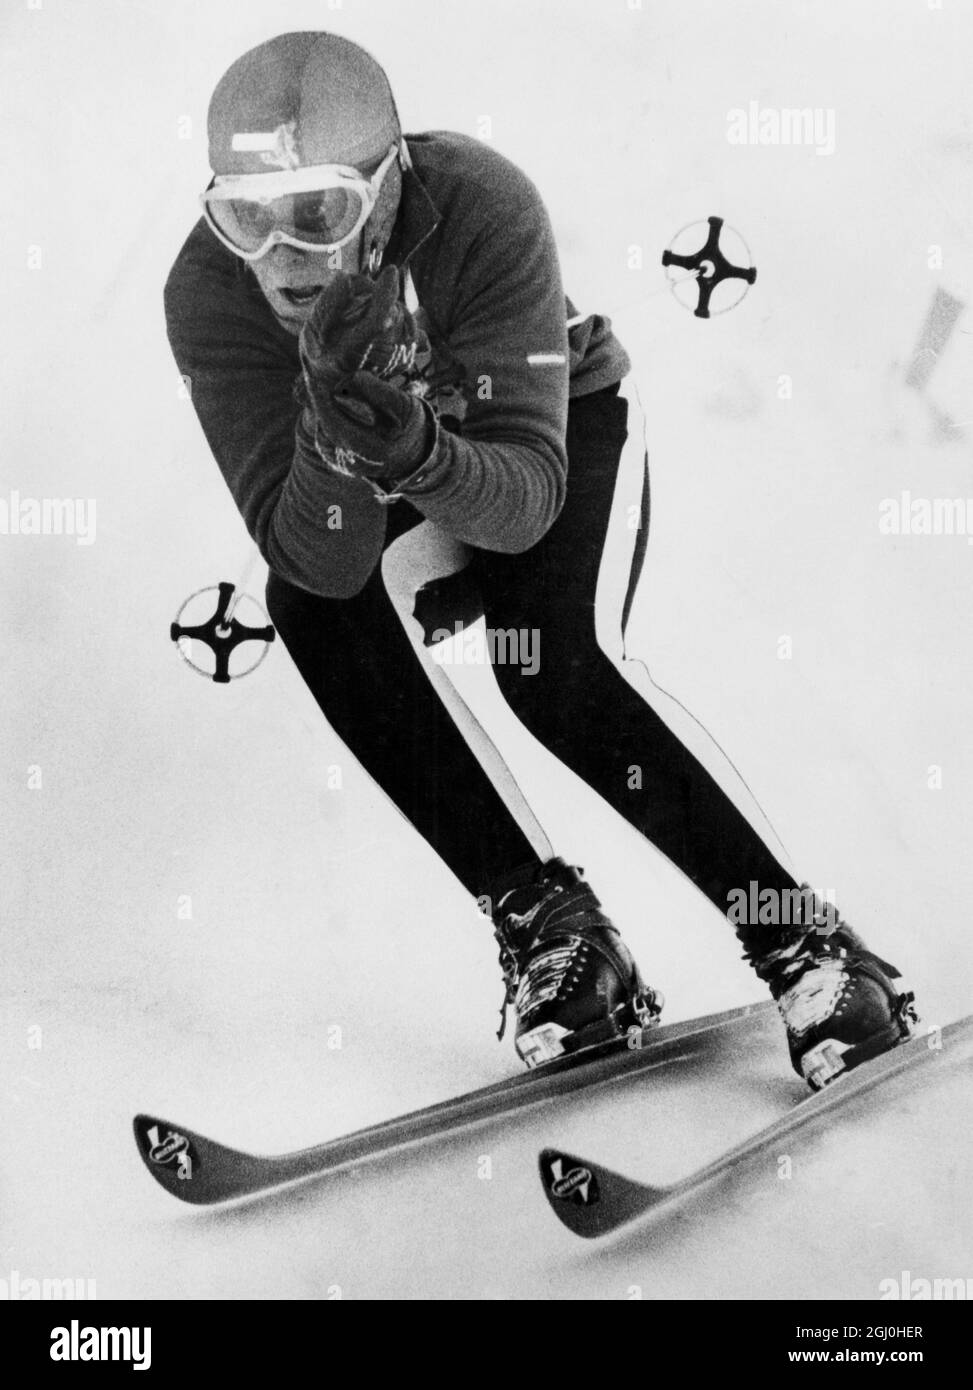 Giochi olimpici invernali 1964 - Innsbruck, Austria Christl Haas, una fotografa di Kitzbuhel, ventenne austriaco, visto in azione ieri quando vinse una medaglia d'oro per il suo paese vincendo la gara femminile di sci alpino. Christl ha vinto in un tempo di 1 minuto e 55.39 secondi. - 7 Febbraio 1964- ©TopFoto Foto Stock